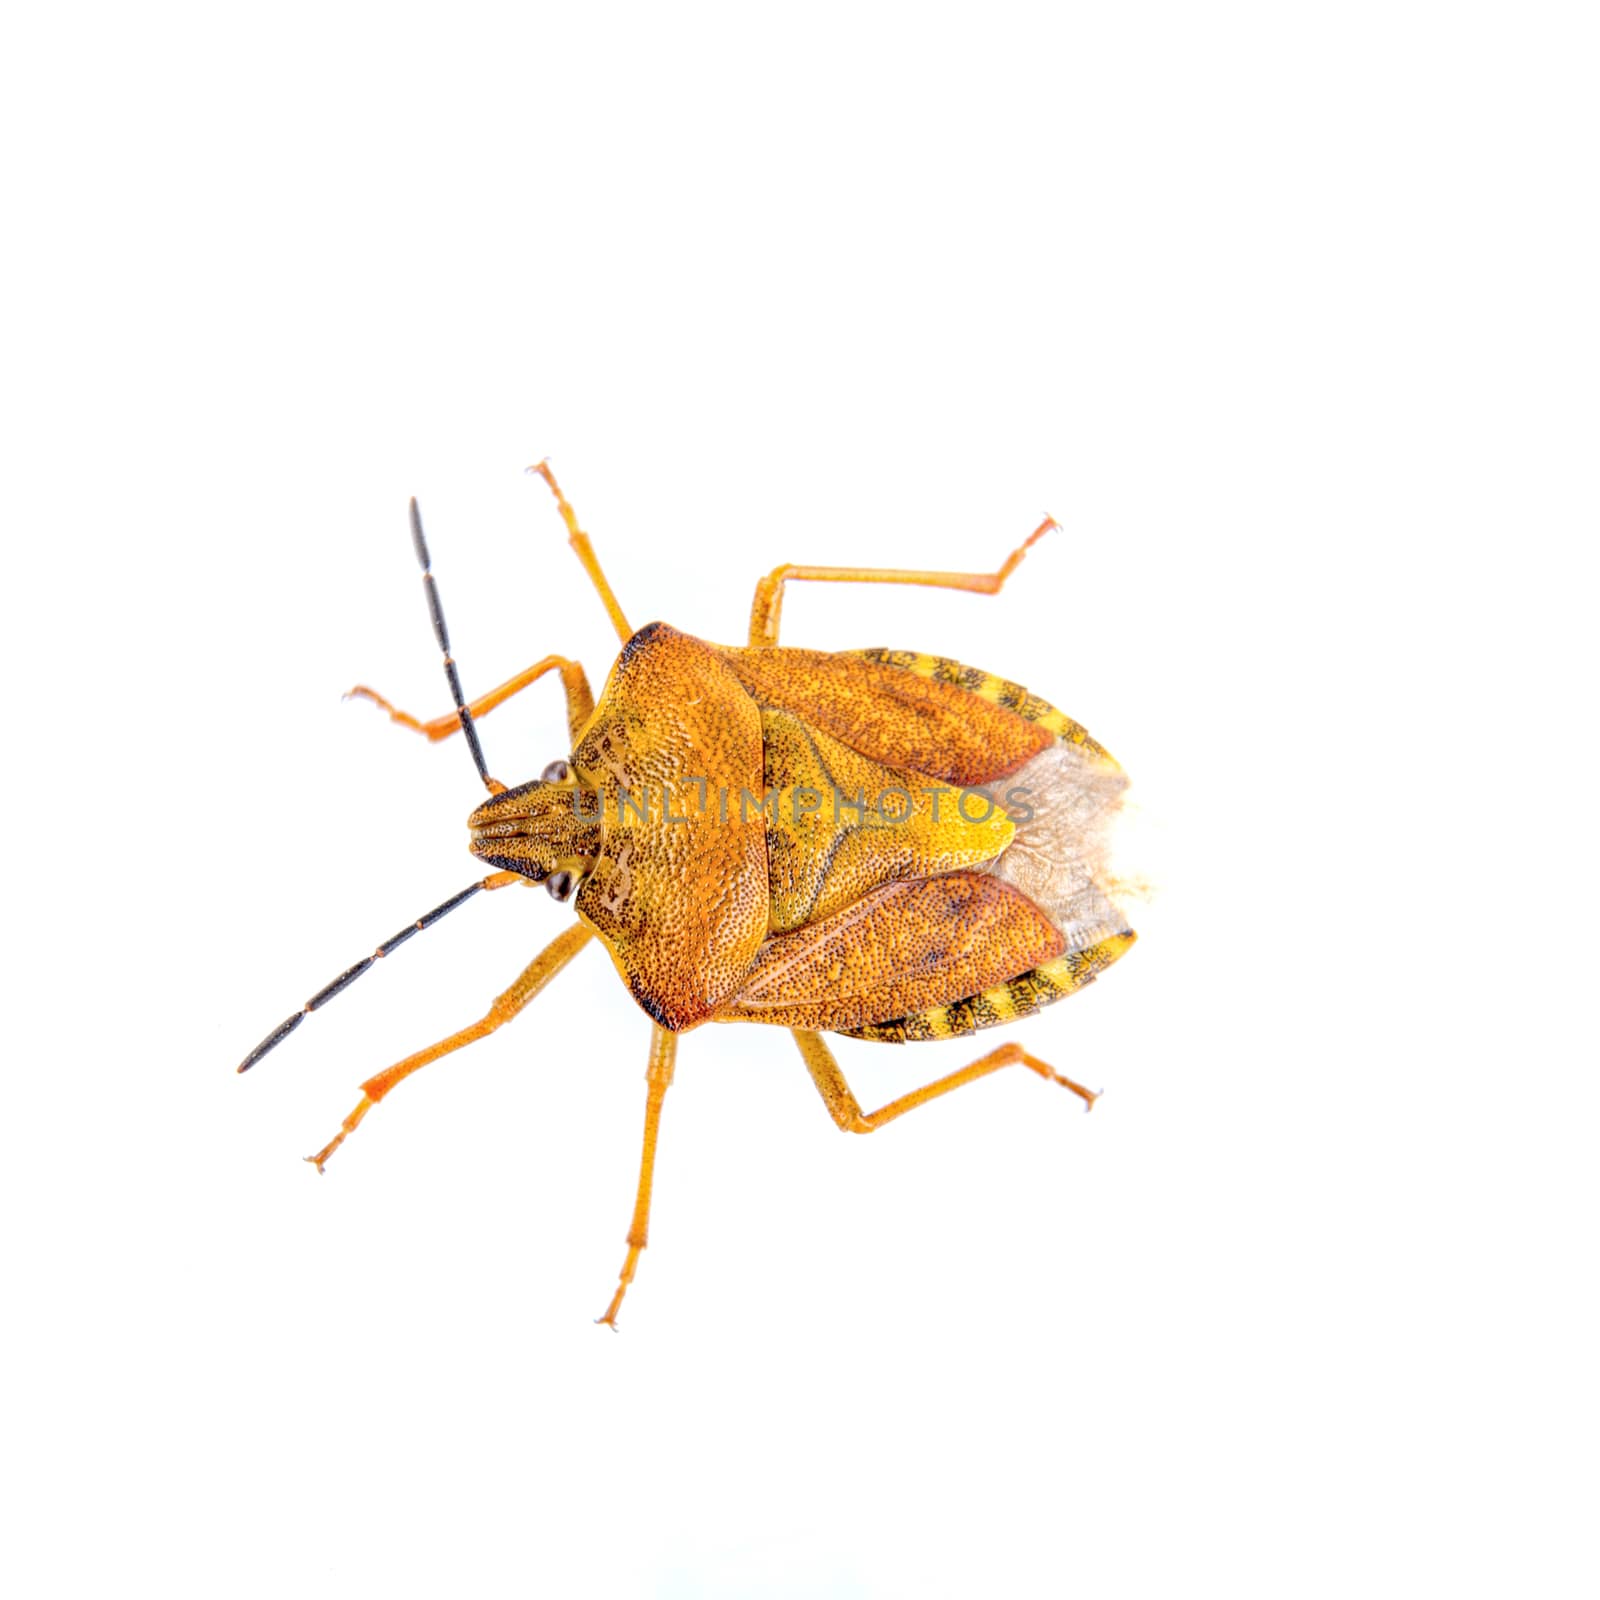 Orange shield bug isolated on a white background